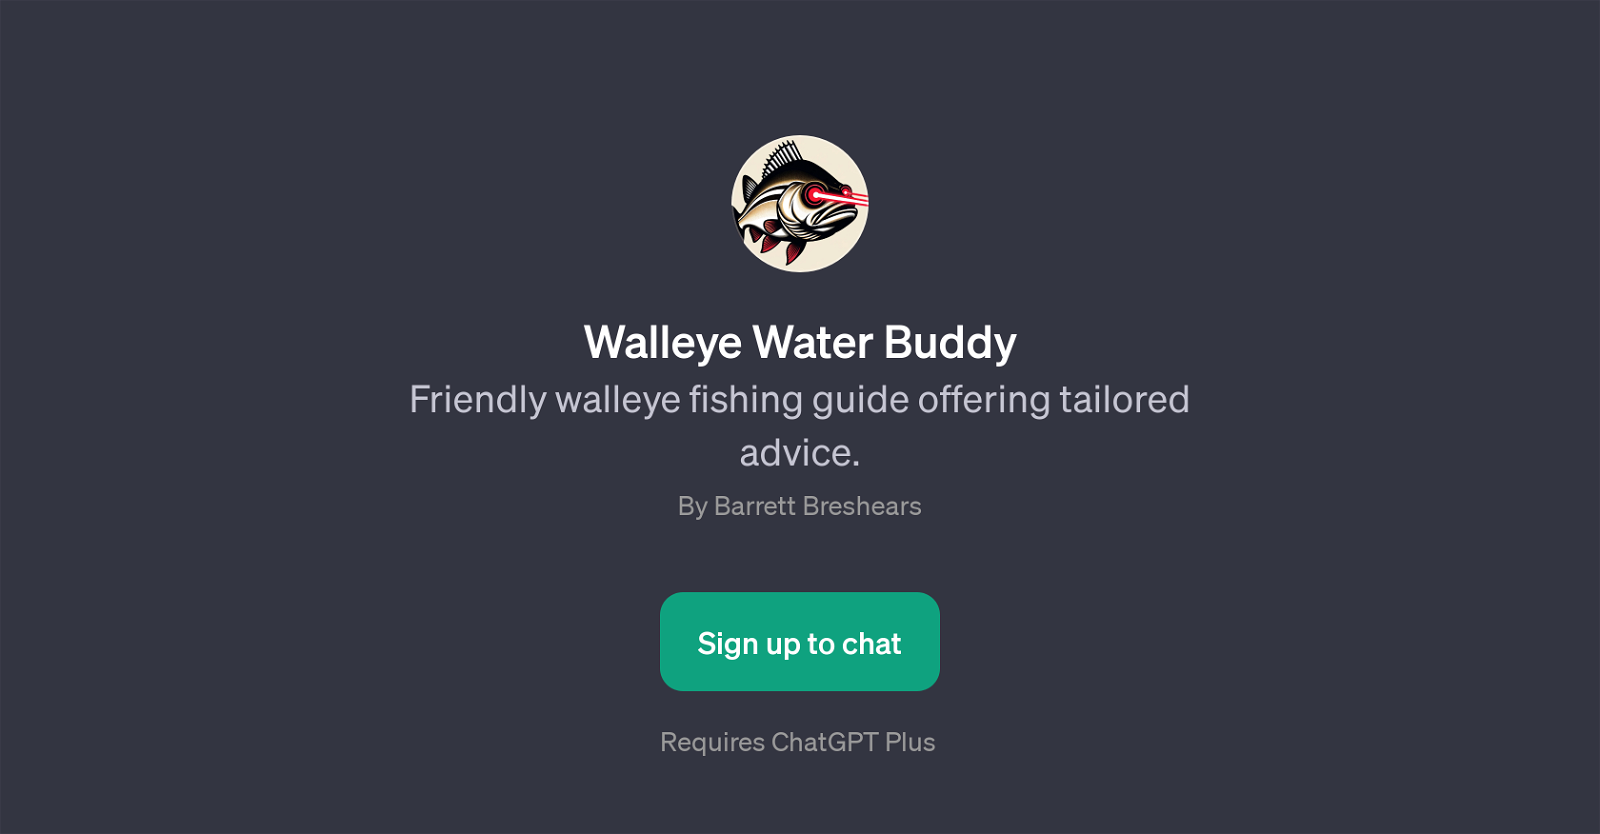 Walleye Water Buddy website